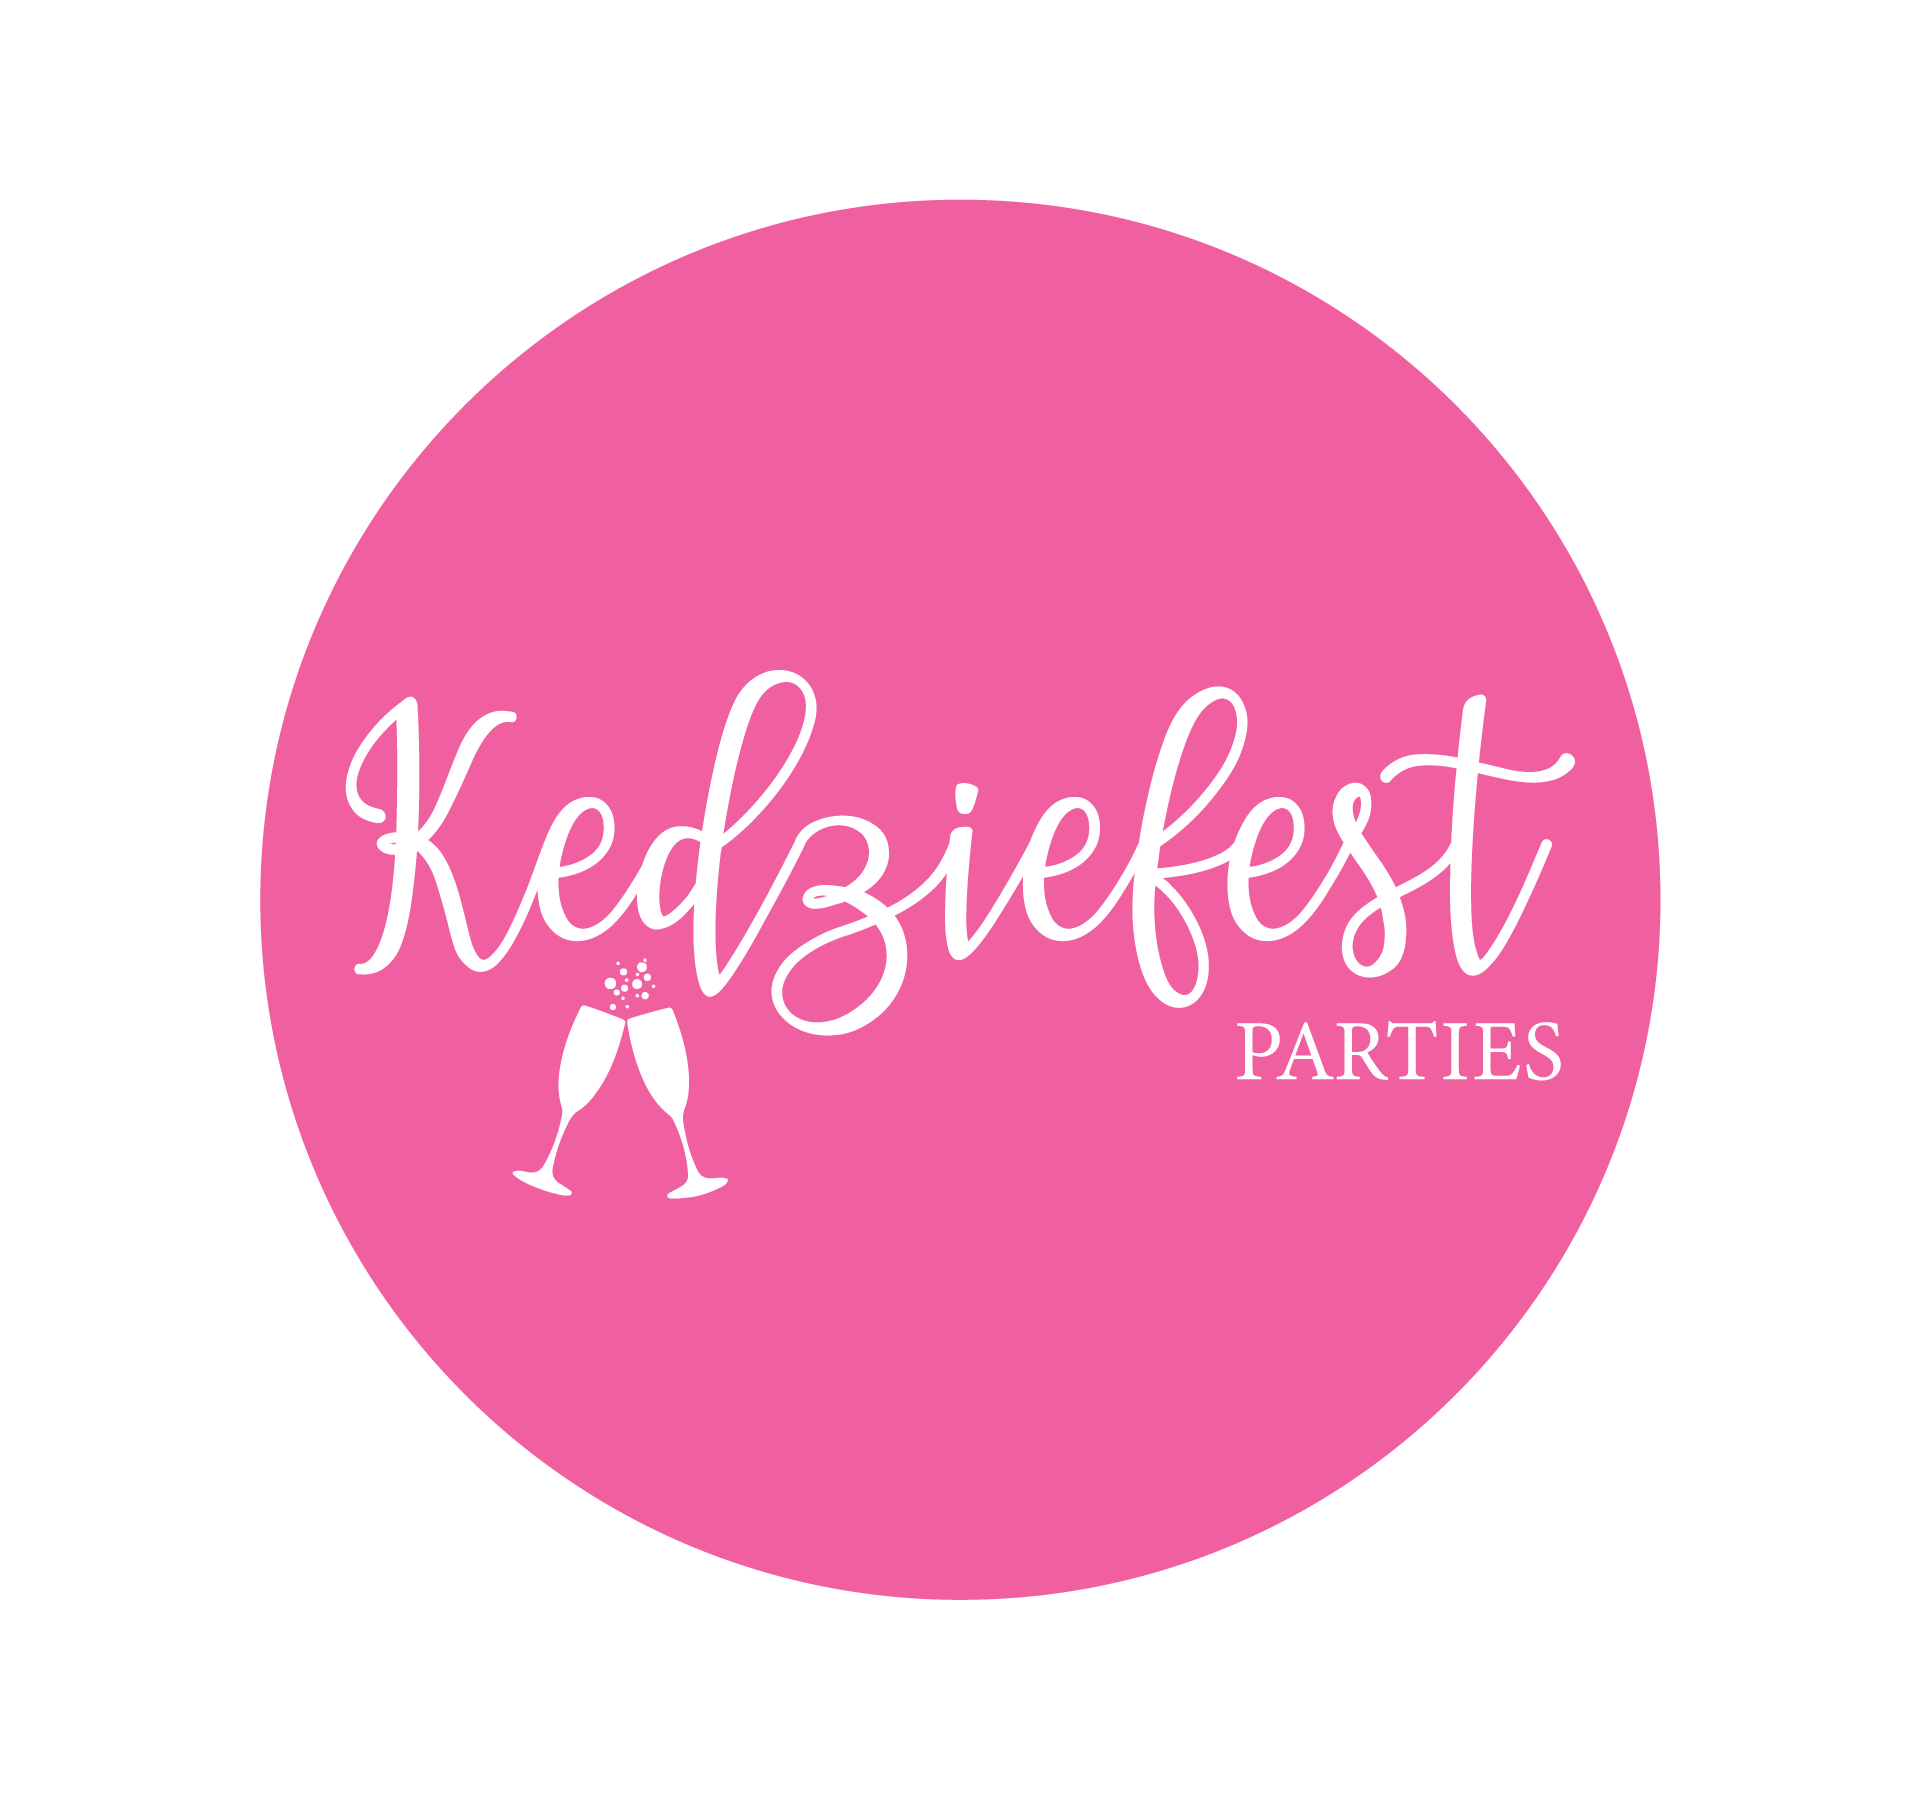 http://kedziefest.com/cdn/shop/files/kedziefest_parties_circle_logo-01_d33b0ca1-9bc3-4d1f-bdbb-f2eff819d894.png?v=1630592814